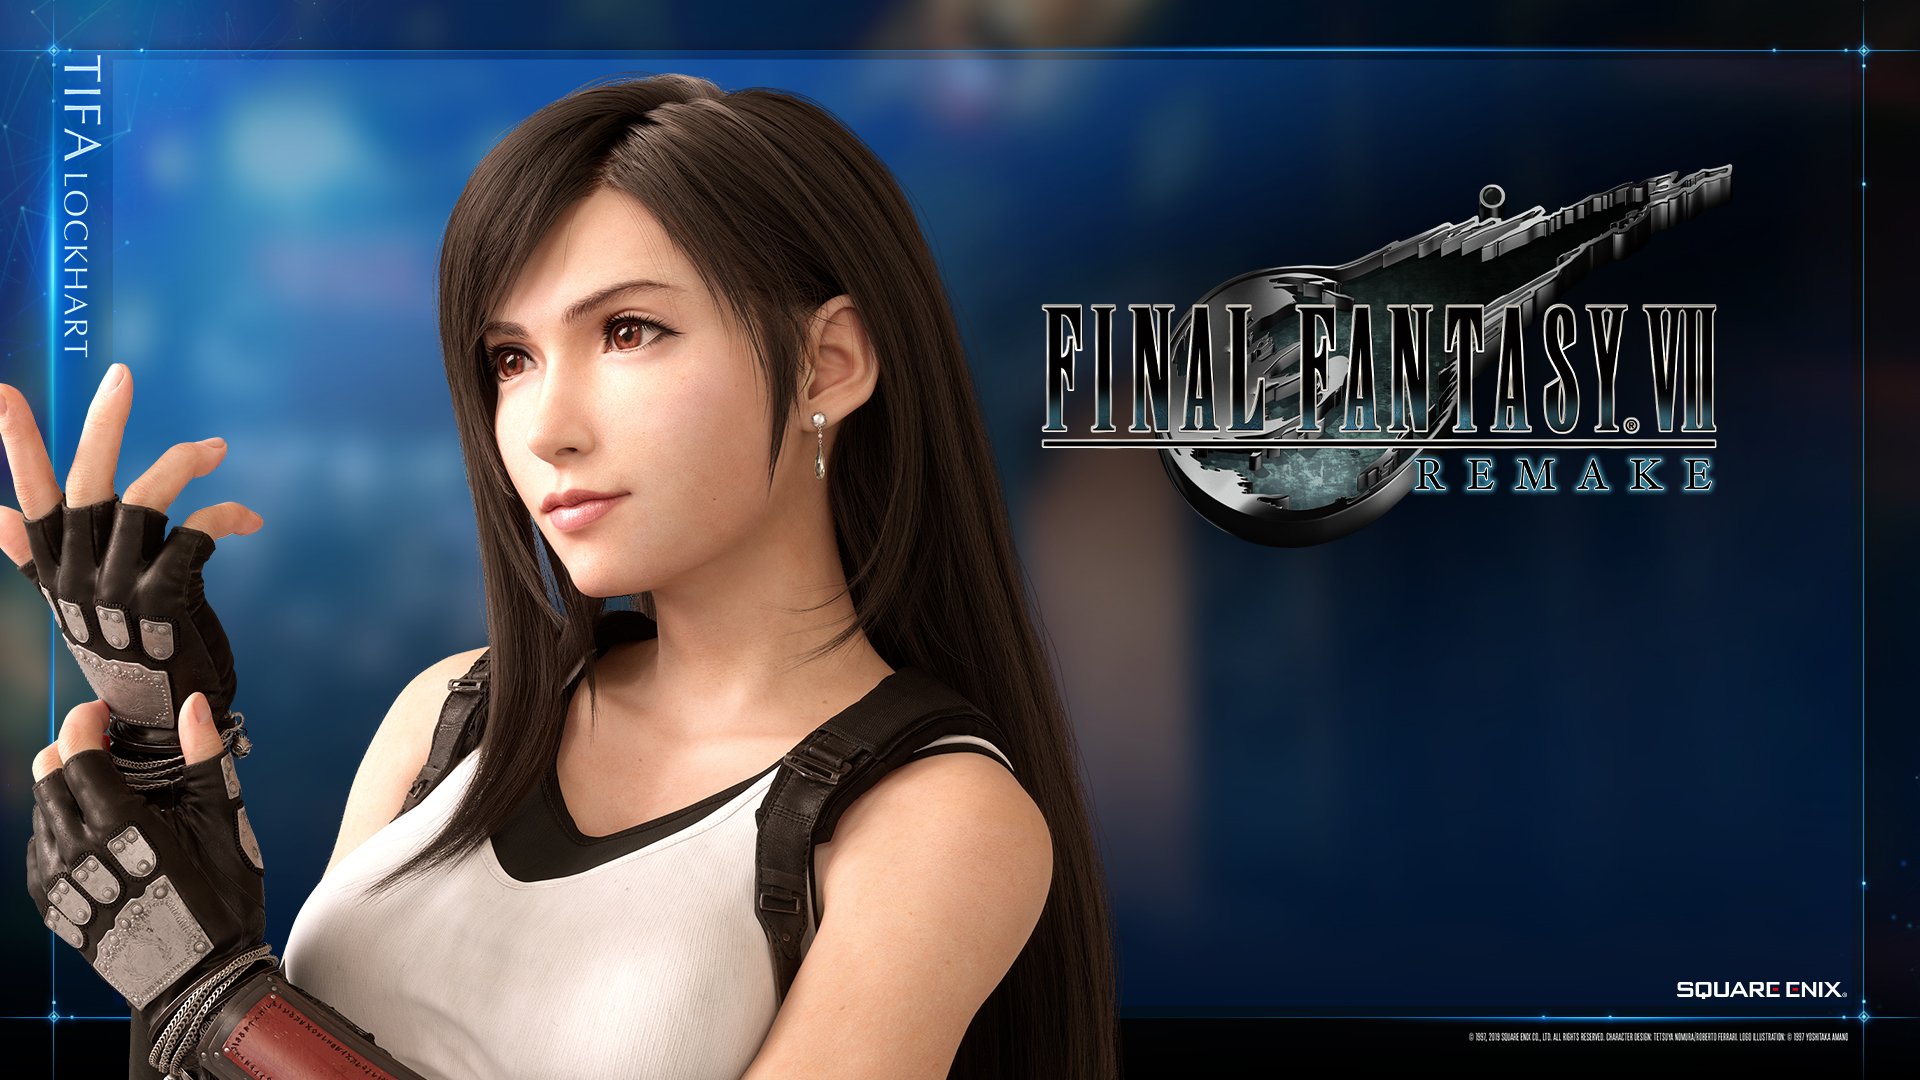 Final Fantasy Aerith And Tifa Remake - HD Wallpaper 